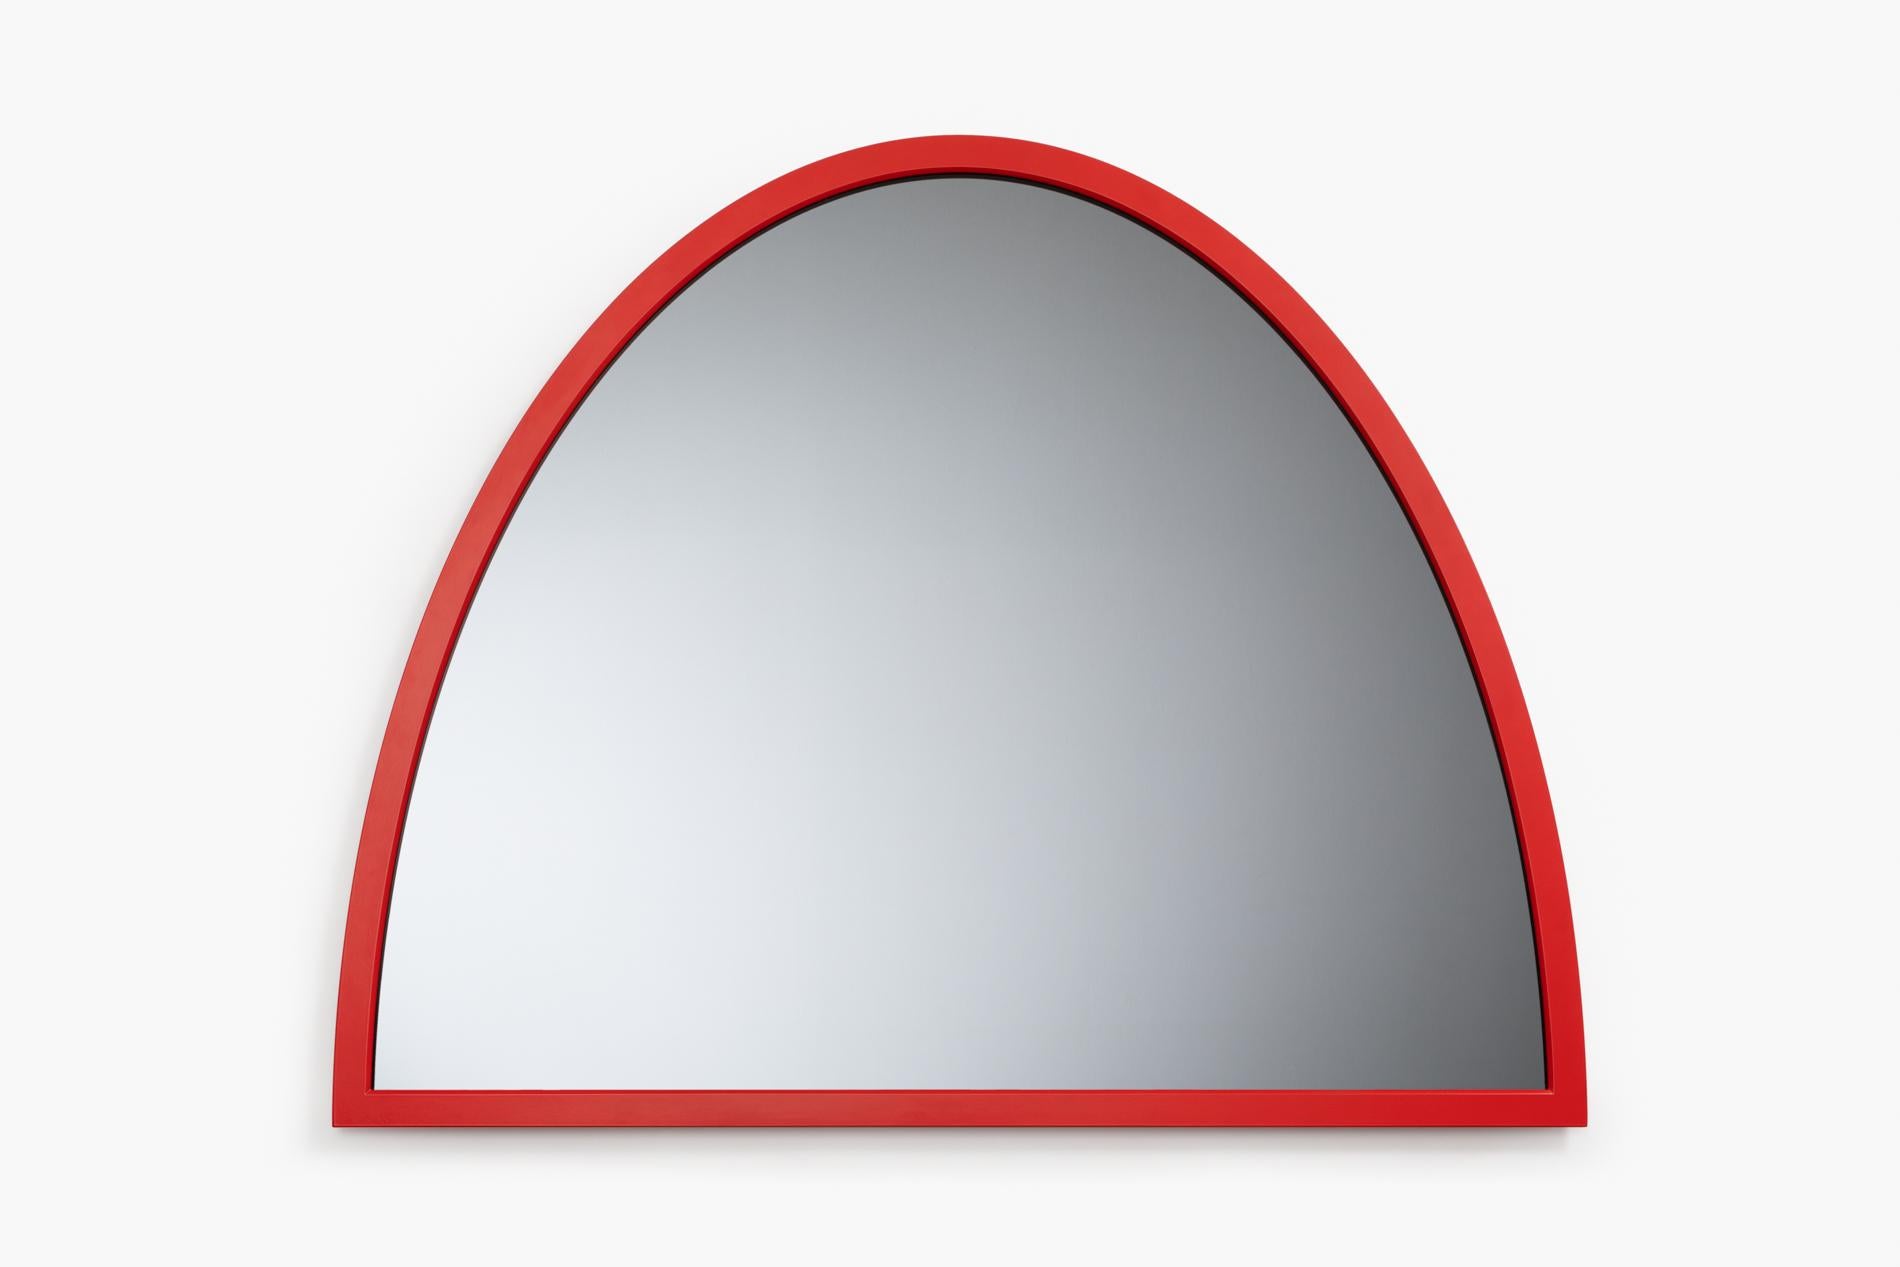 Mittlerer Spiegel Mirooo von Moure Studio.
Abmessungen: T100 x H80,5 cm.
MATERIAL: Rauchglas und Stahl.

3 Spiegel aus grauem Rauchglas und farbigem Stahl in verschiedenen Farben.
Zusammen verleihen diese Spiegel einem Innenraum ein starkes